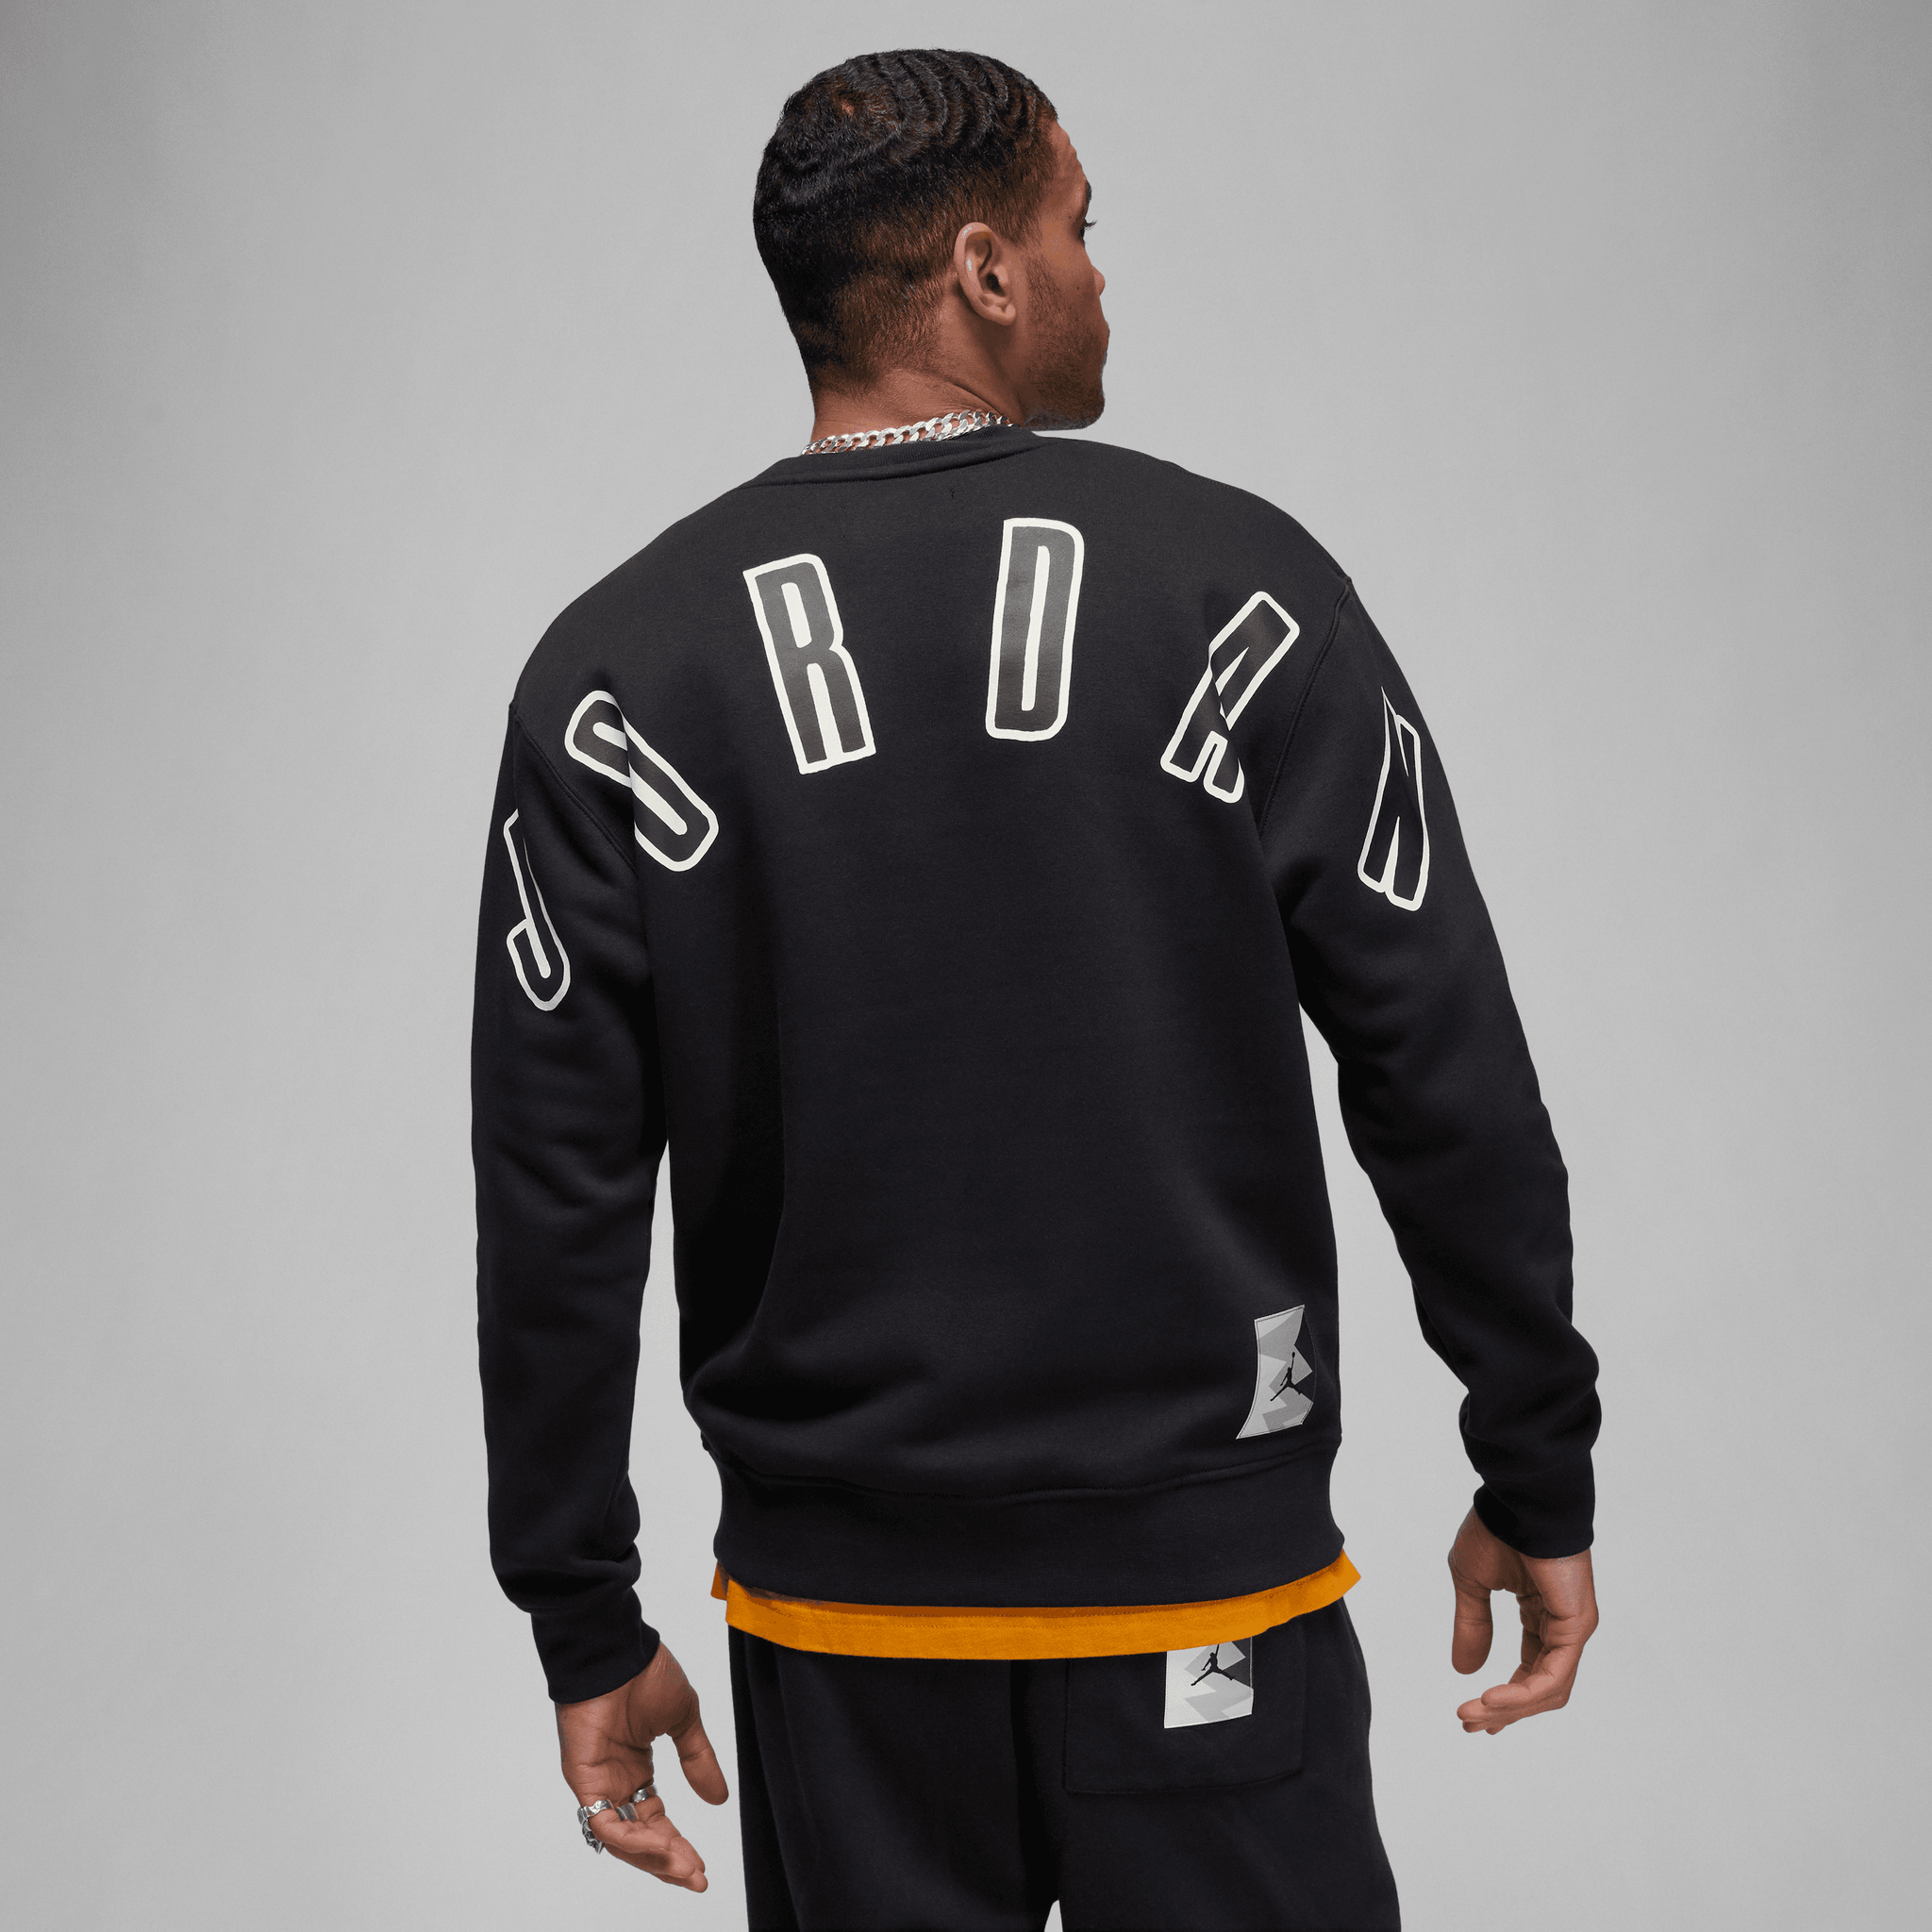 Jordan MVP Graphic Crew Sweatshirt - Sail/Black - Mens